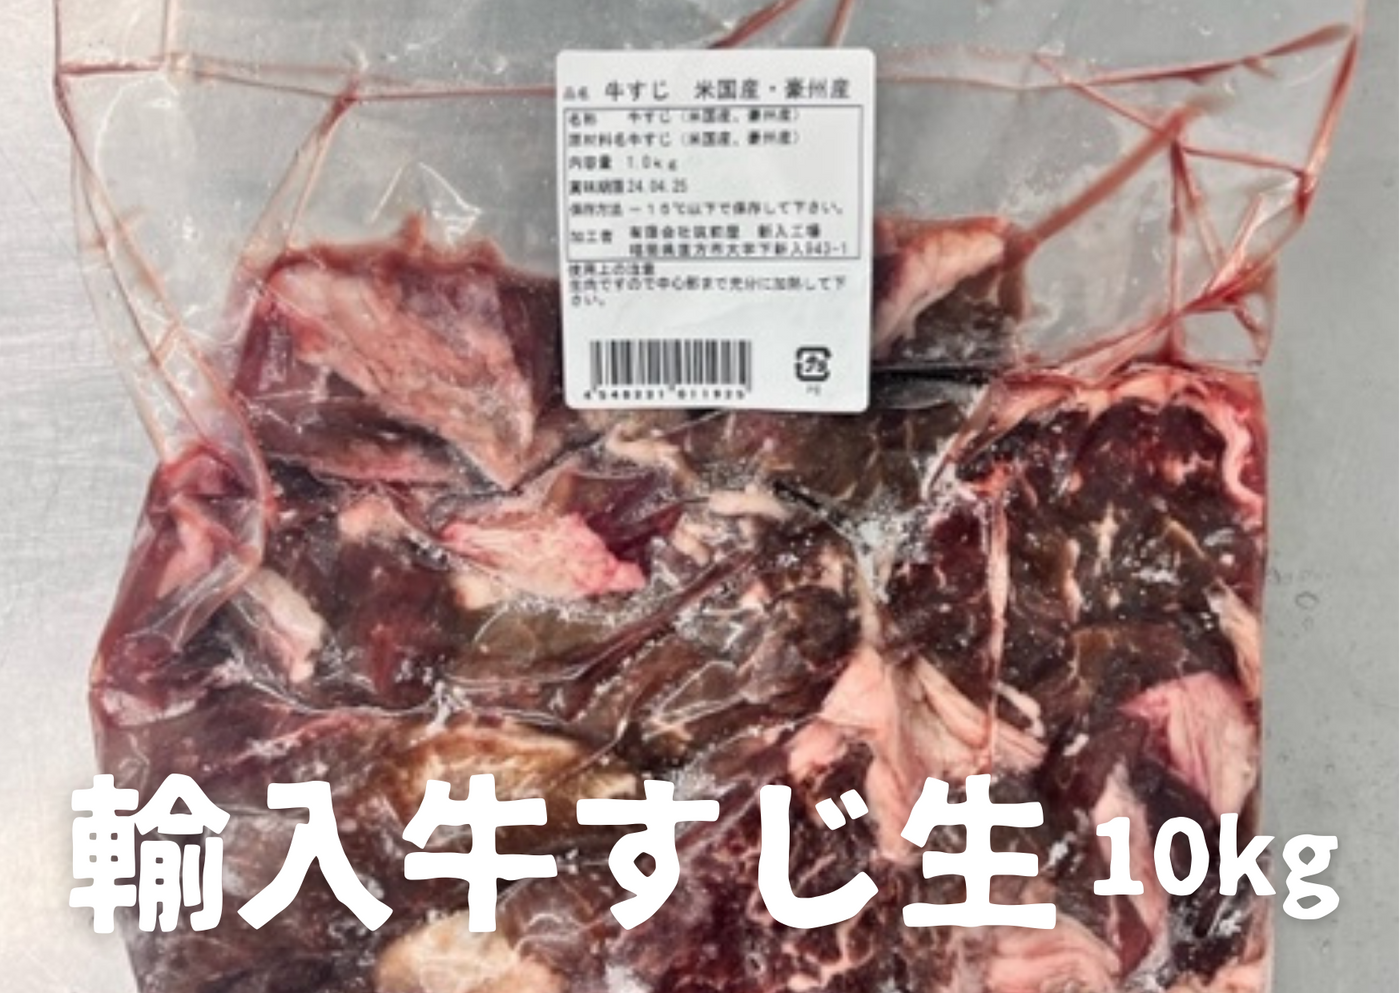 【業務用】輸入牛すじ生冷凍10kg